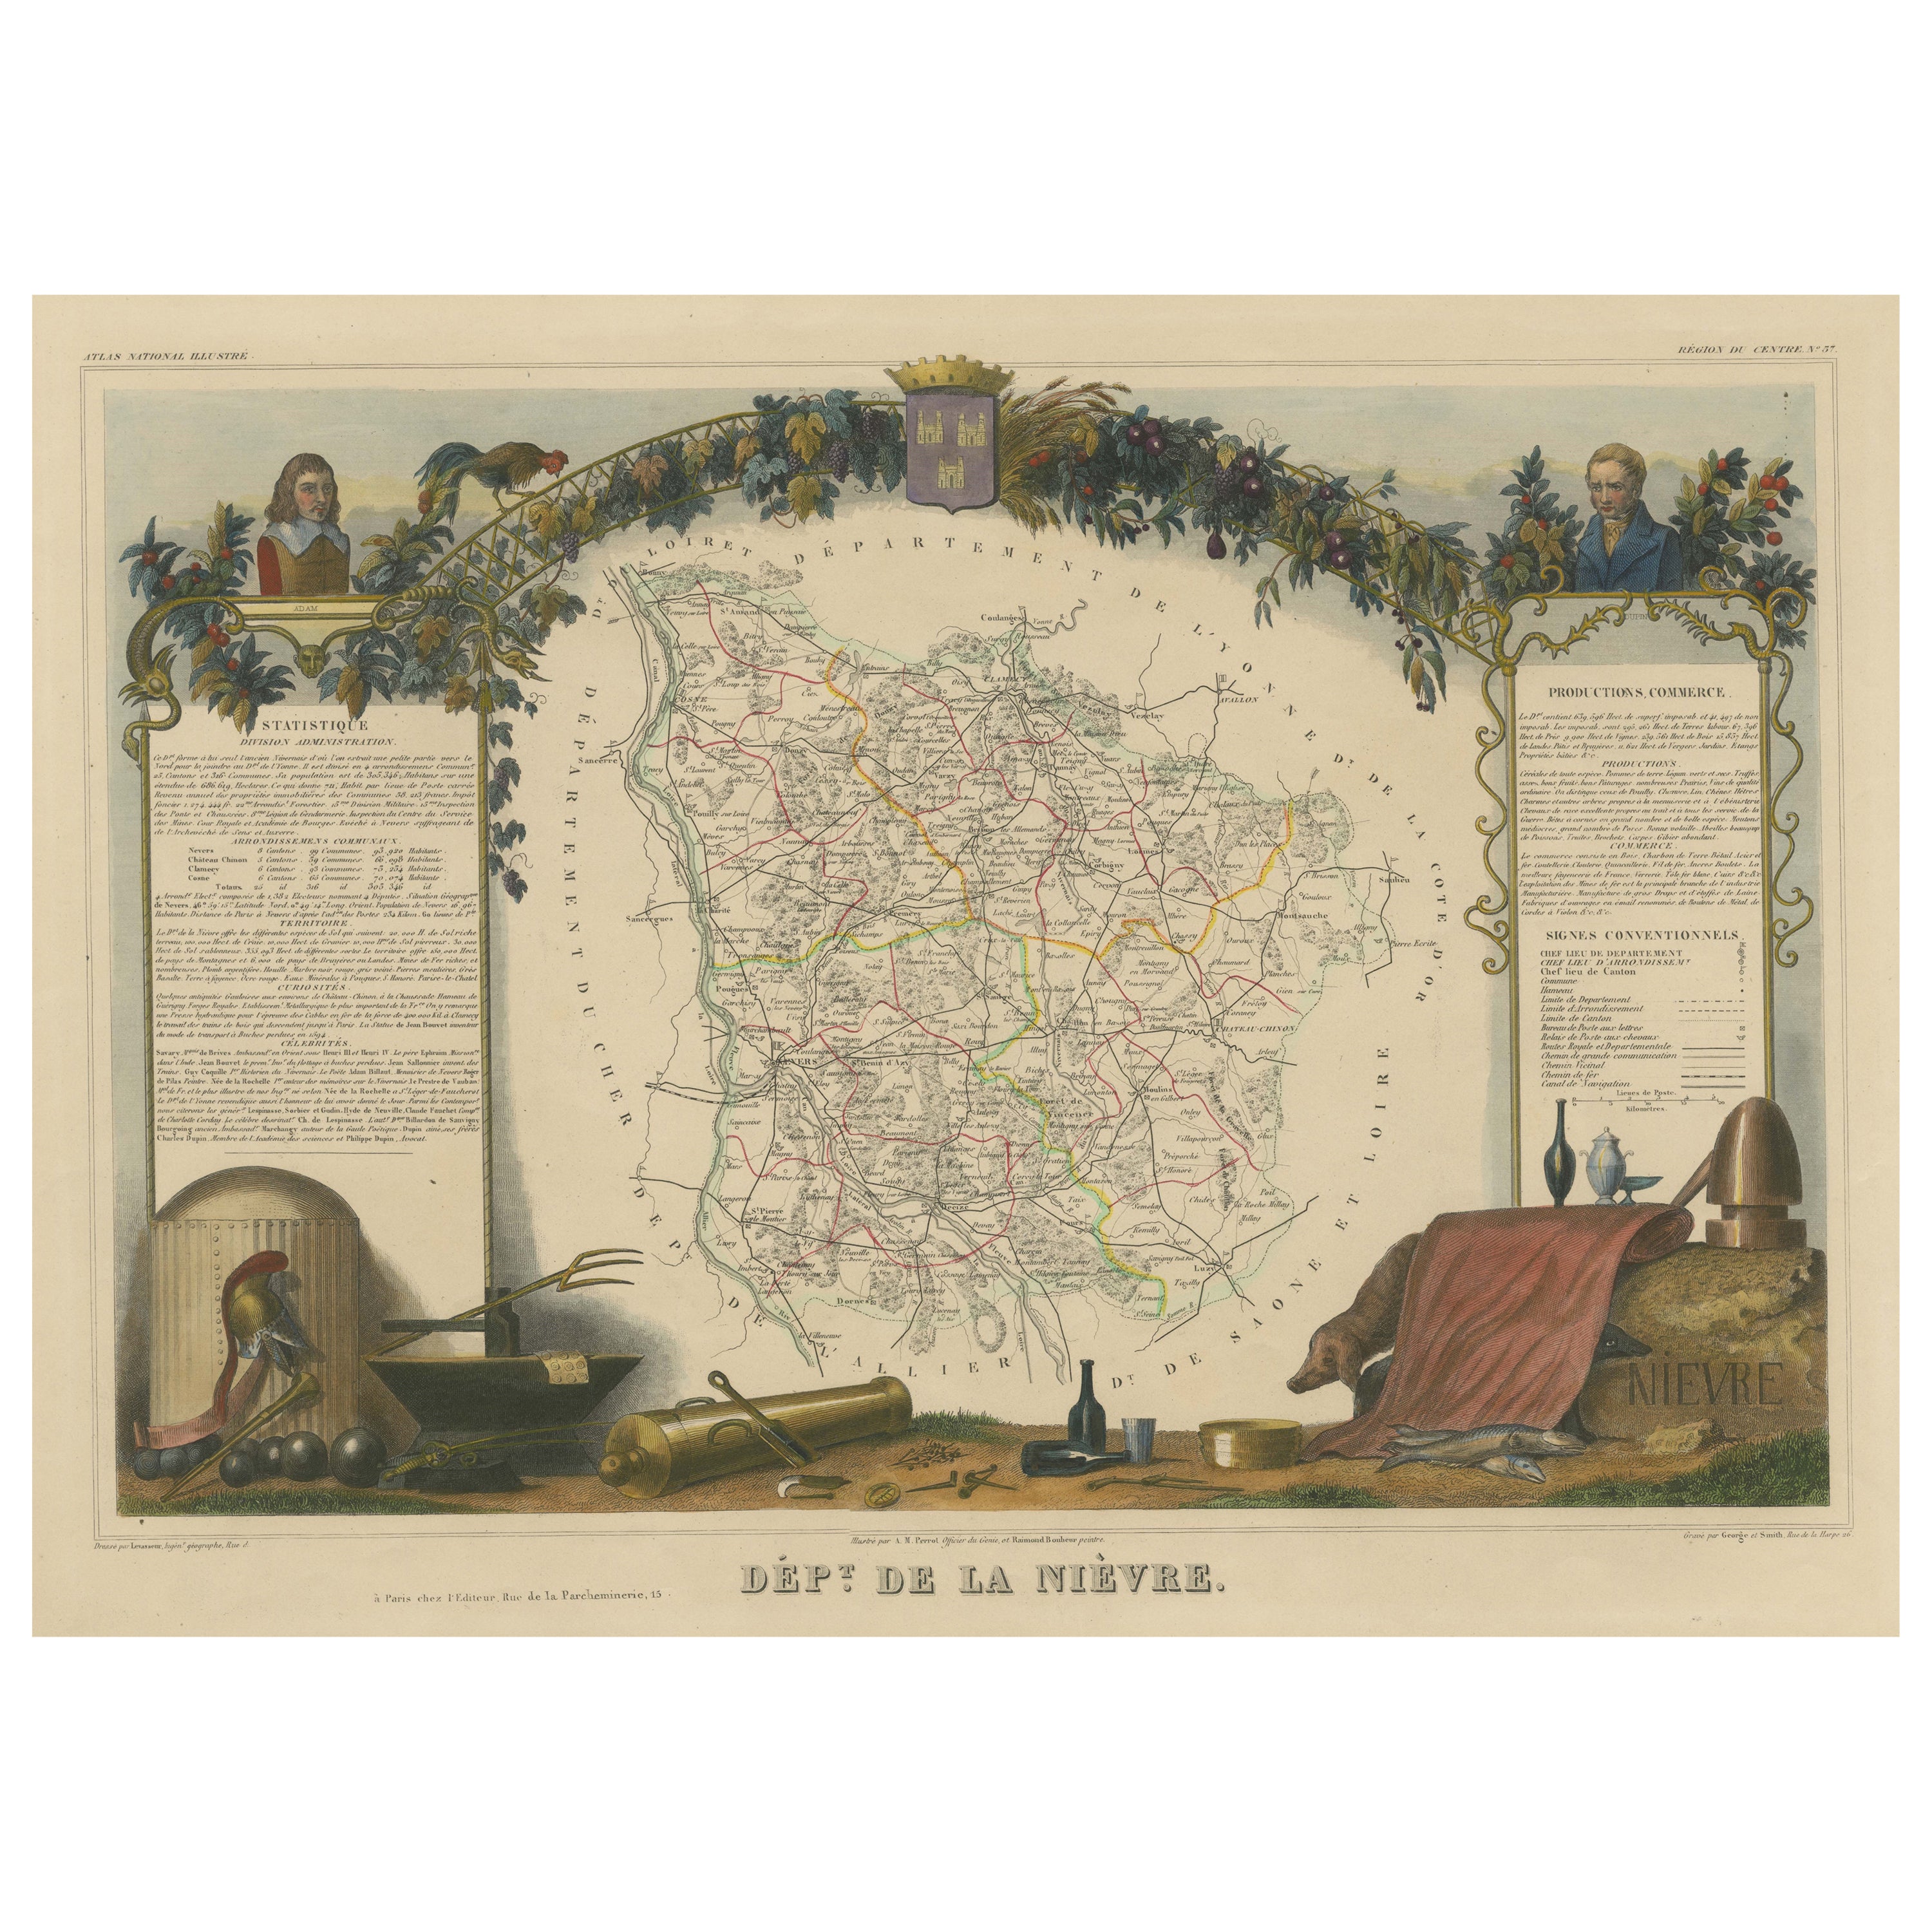 Carte ancienne, colorée à la main, du département de la Nièvre, France